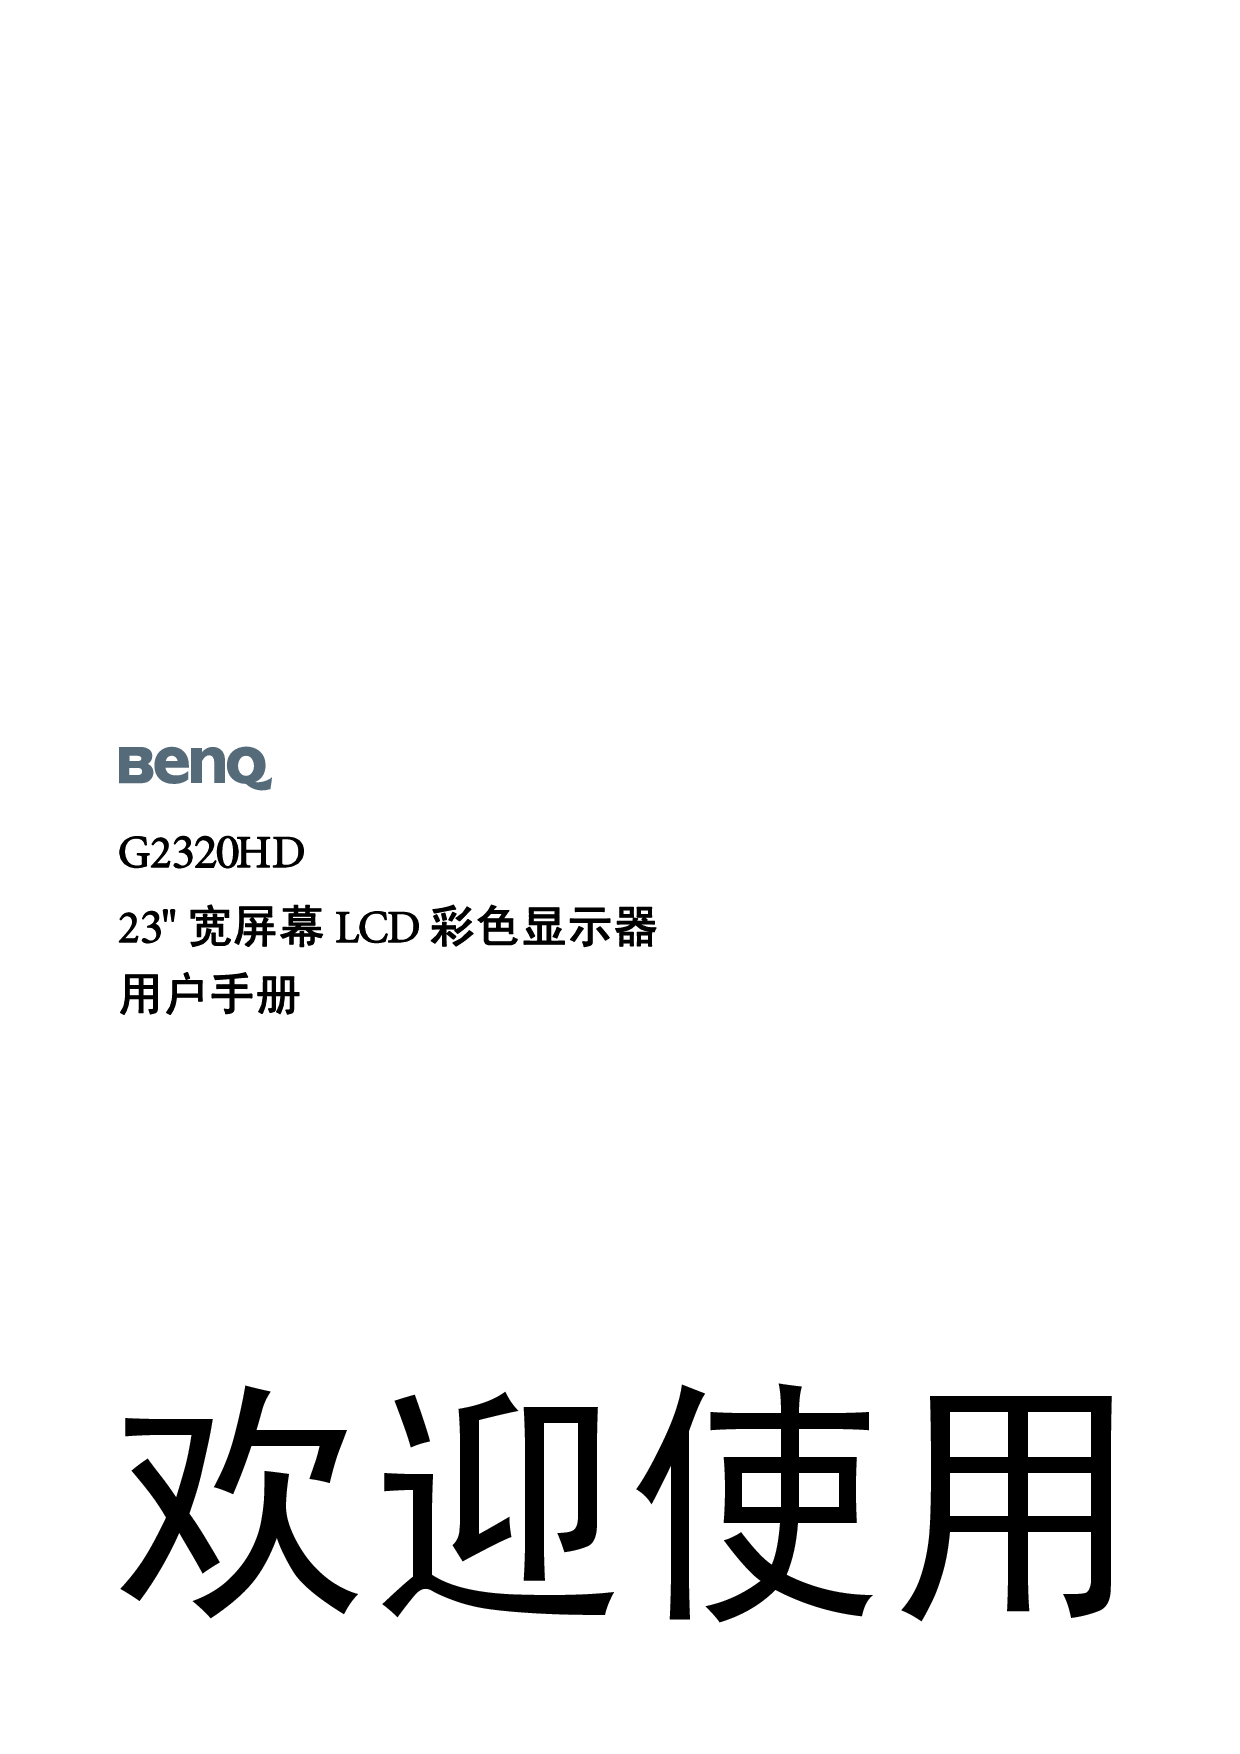 明基 Benq G2320HD 使用手册 封面